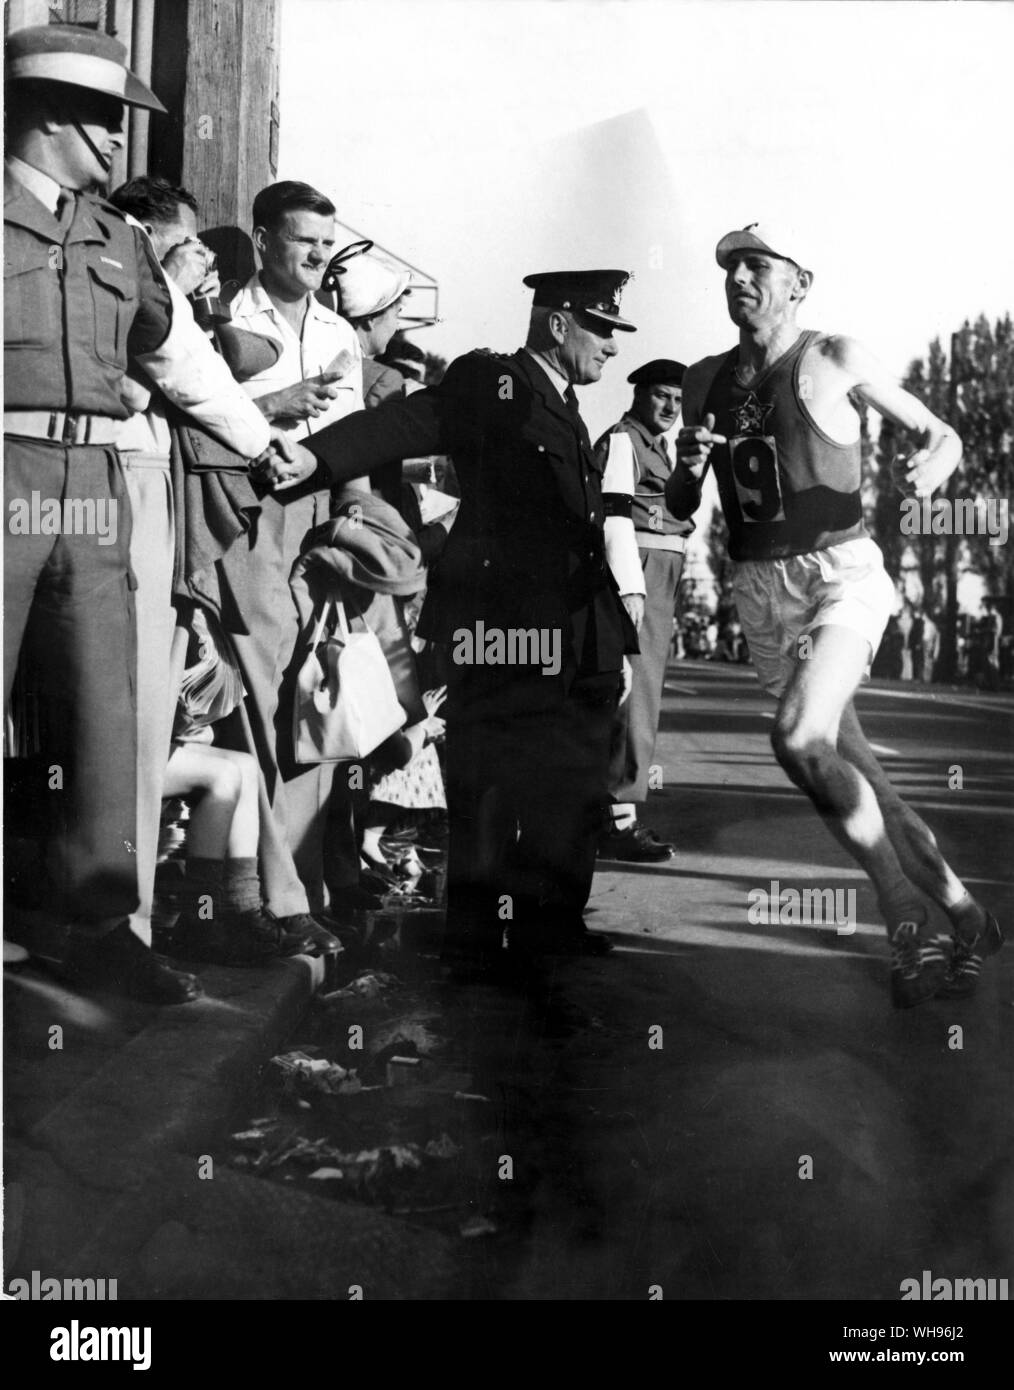 Aus., Melbourne, Olimpiadi, 1956: Emil Zatopek (Cecoslovacchia) entra nello stadio principale per terminare la maratona. Foto Stock